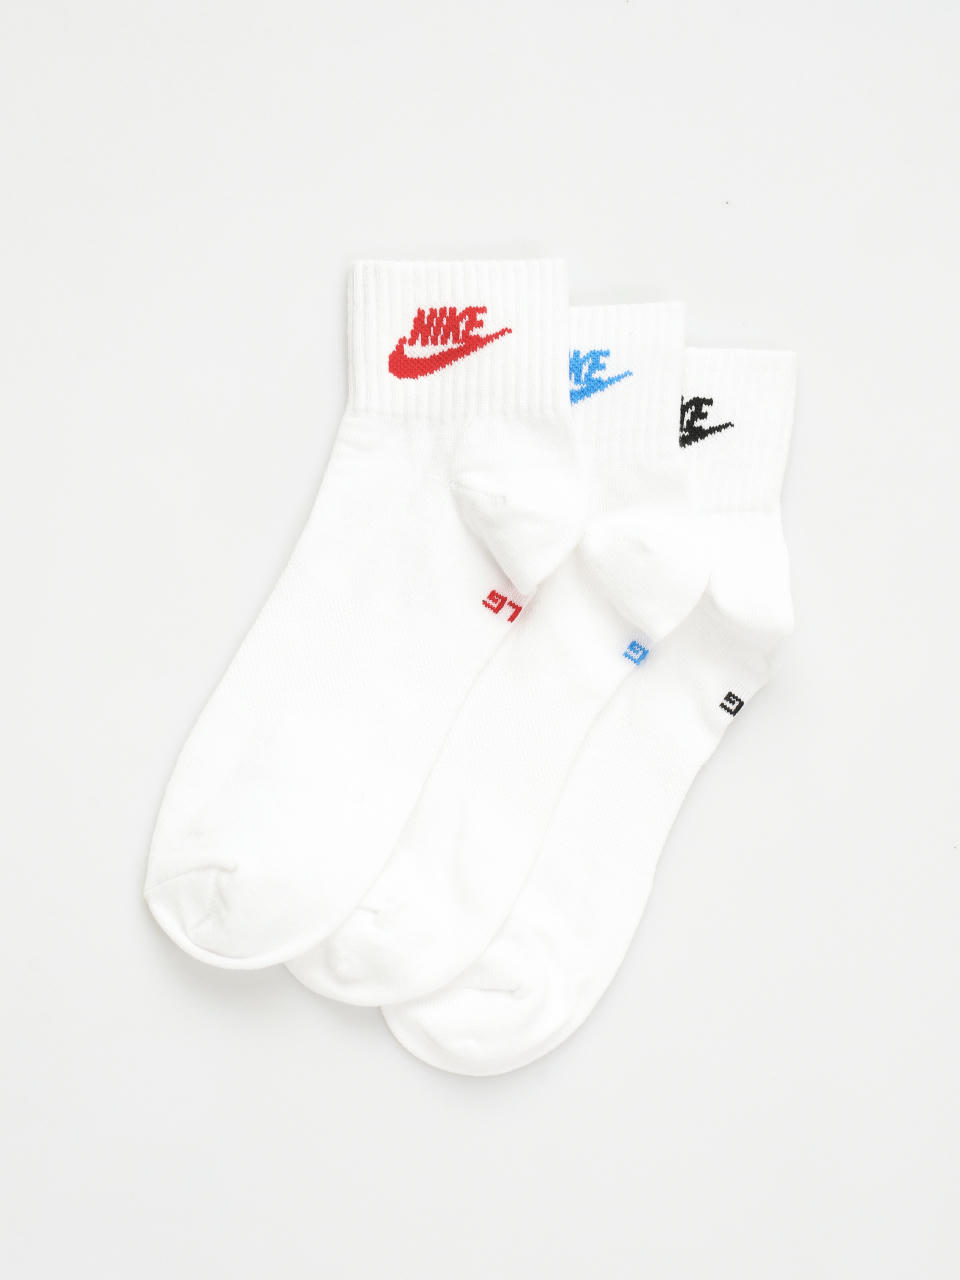 Nike SB One Leggings Wmn (black/white)